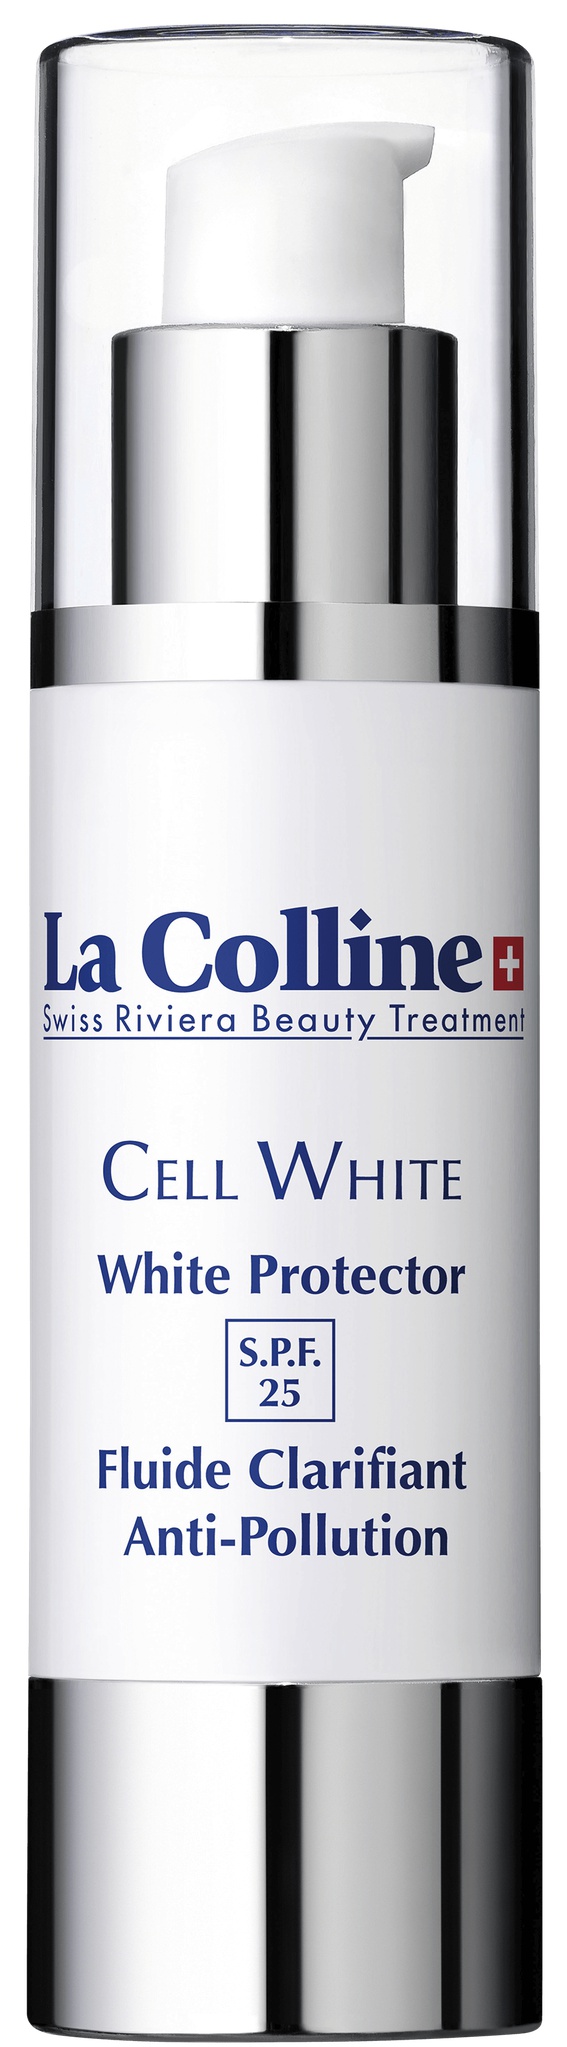 La Colline Cell White Protector SPF 25